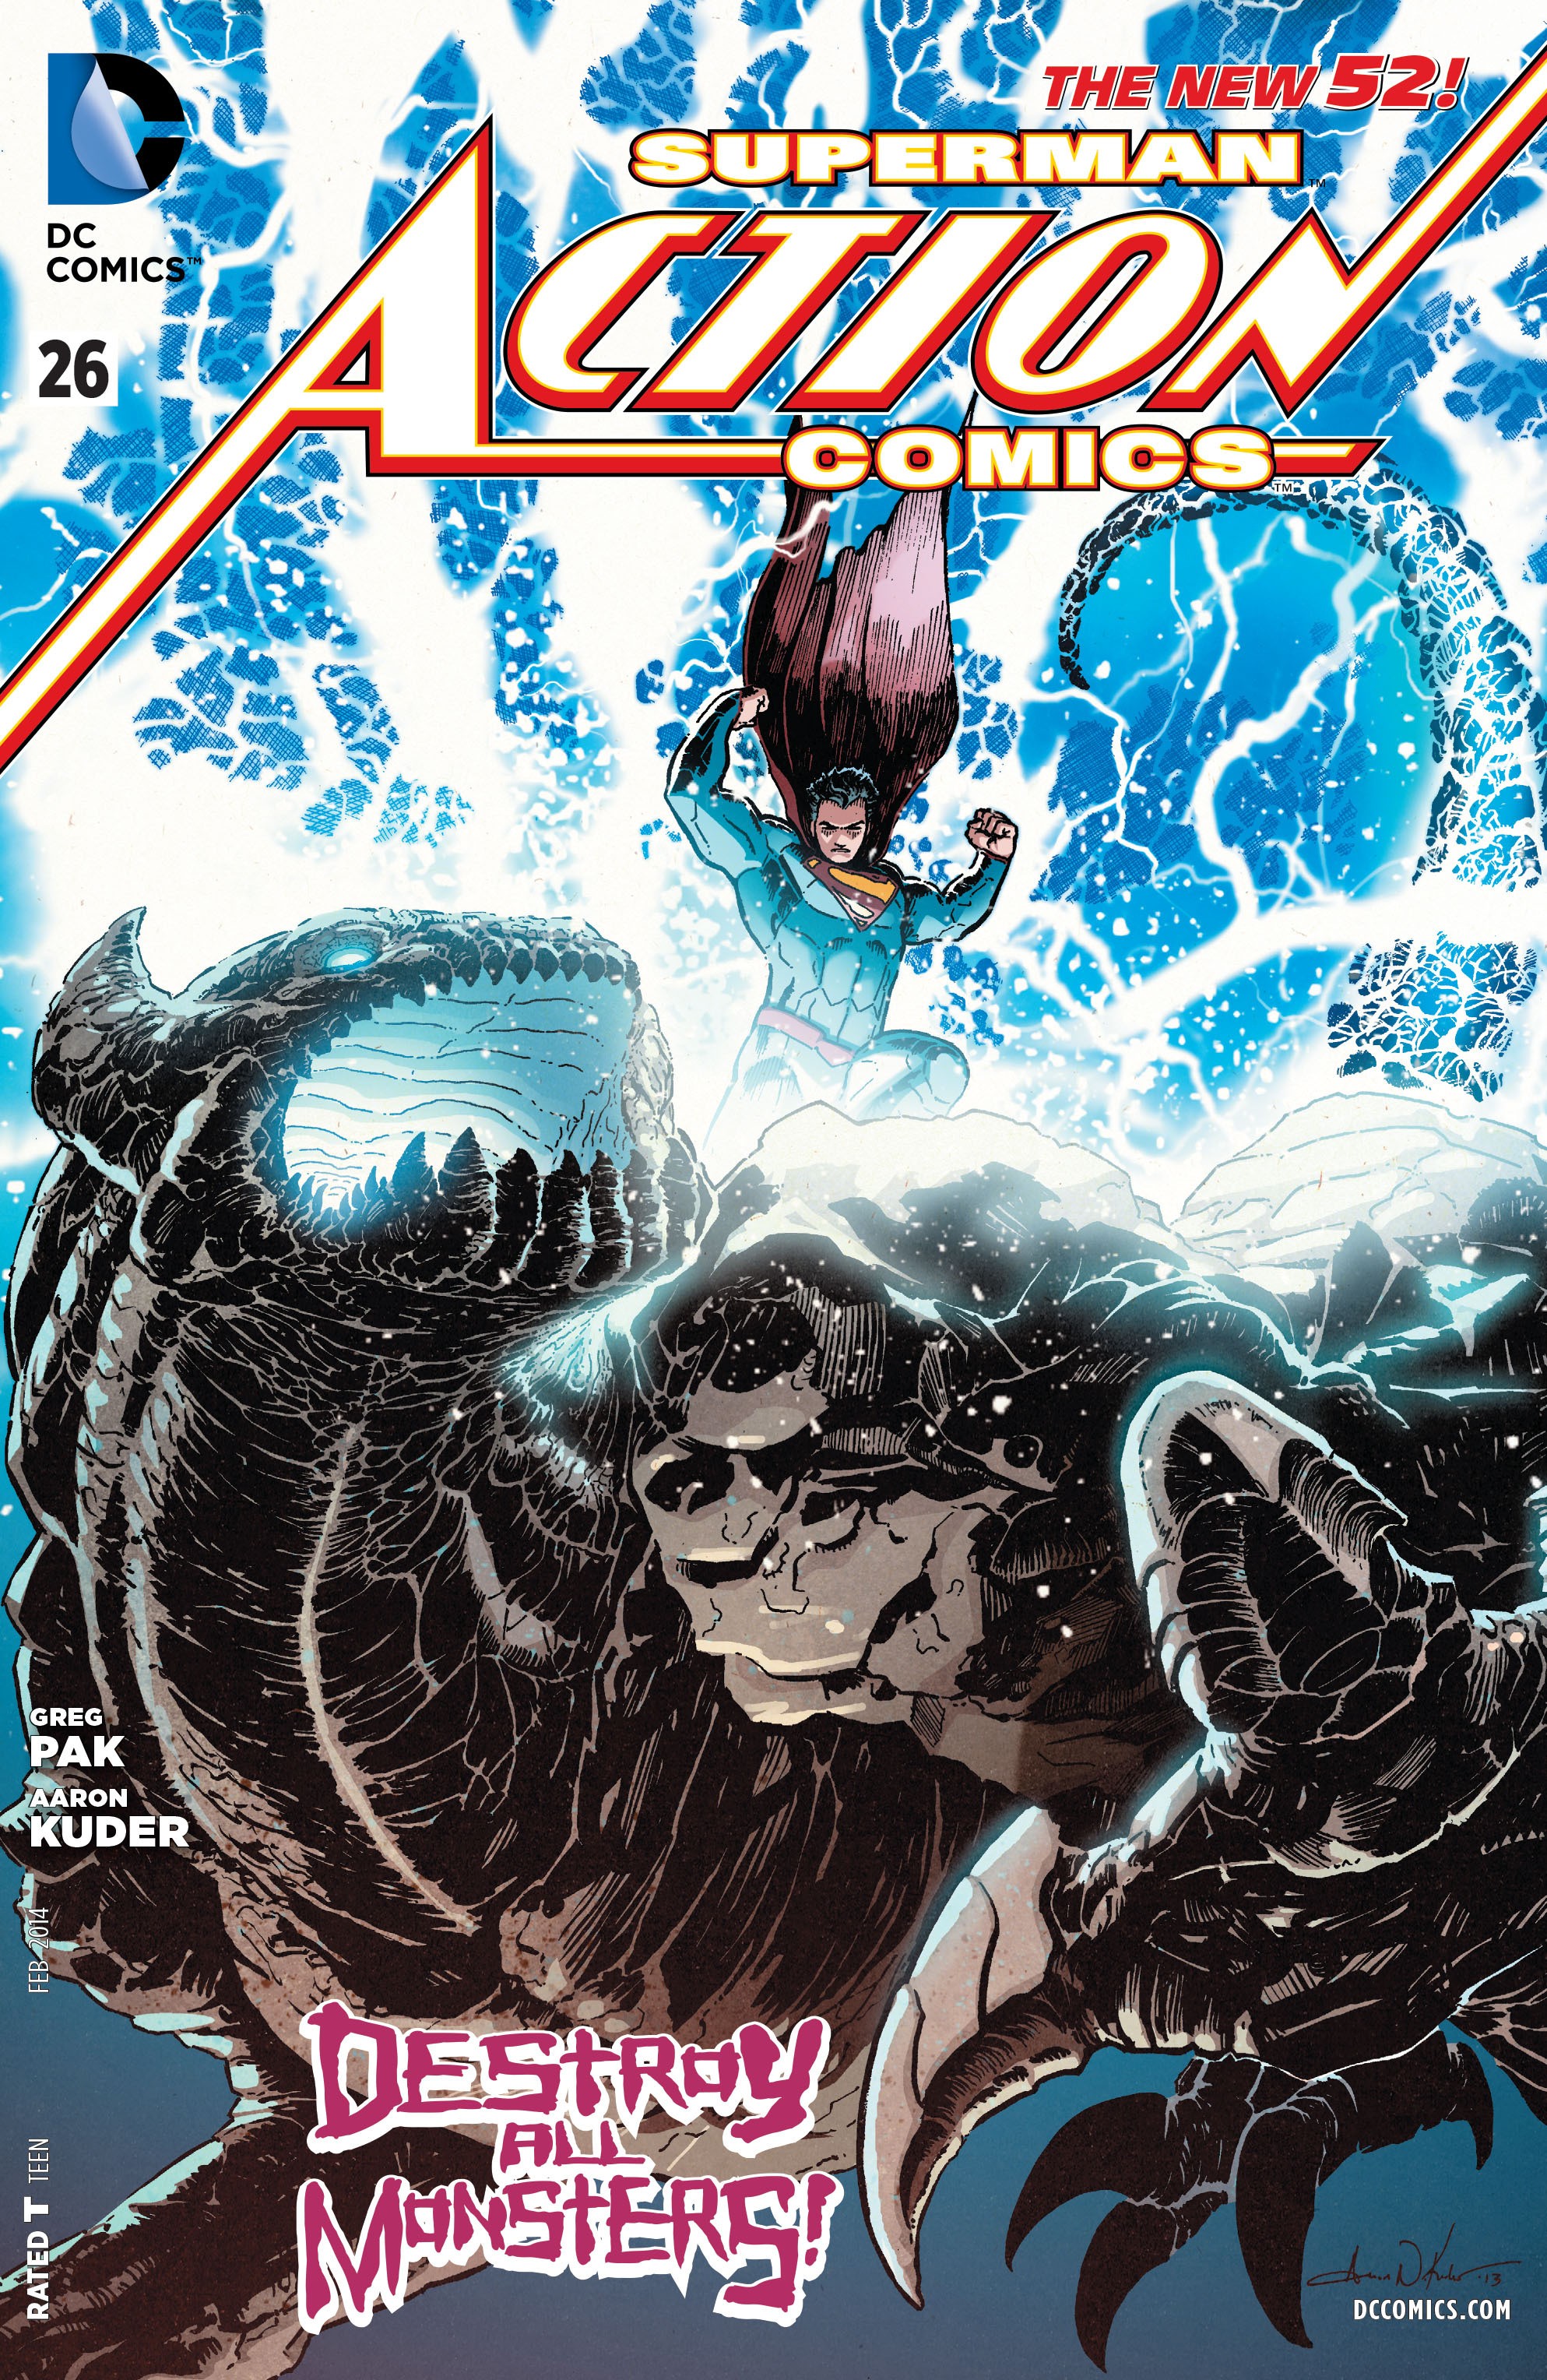 Action Comics Vol. 2 #26